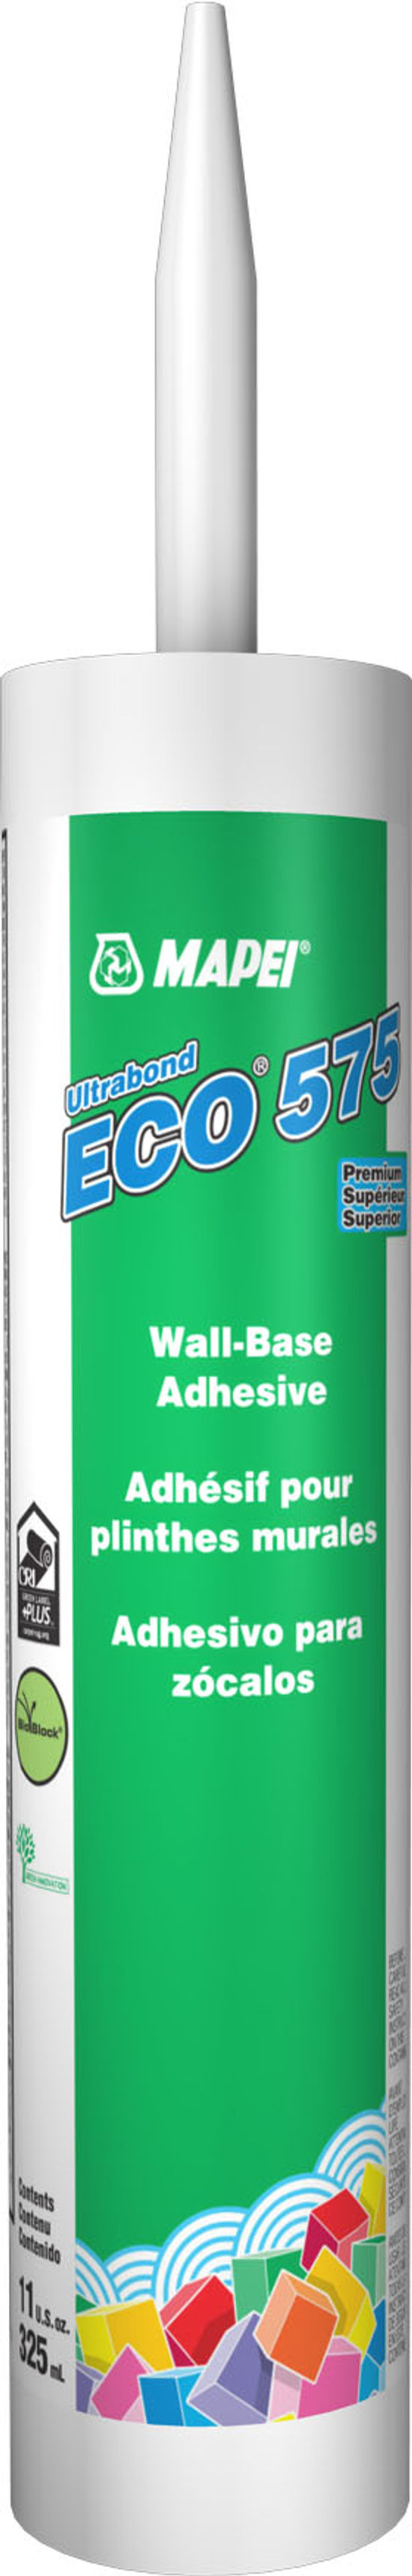 Ultrabond ECO 575 Adhésif de qualité supérieure pour plinthes murales - 325 mL